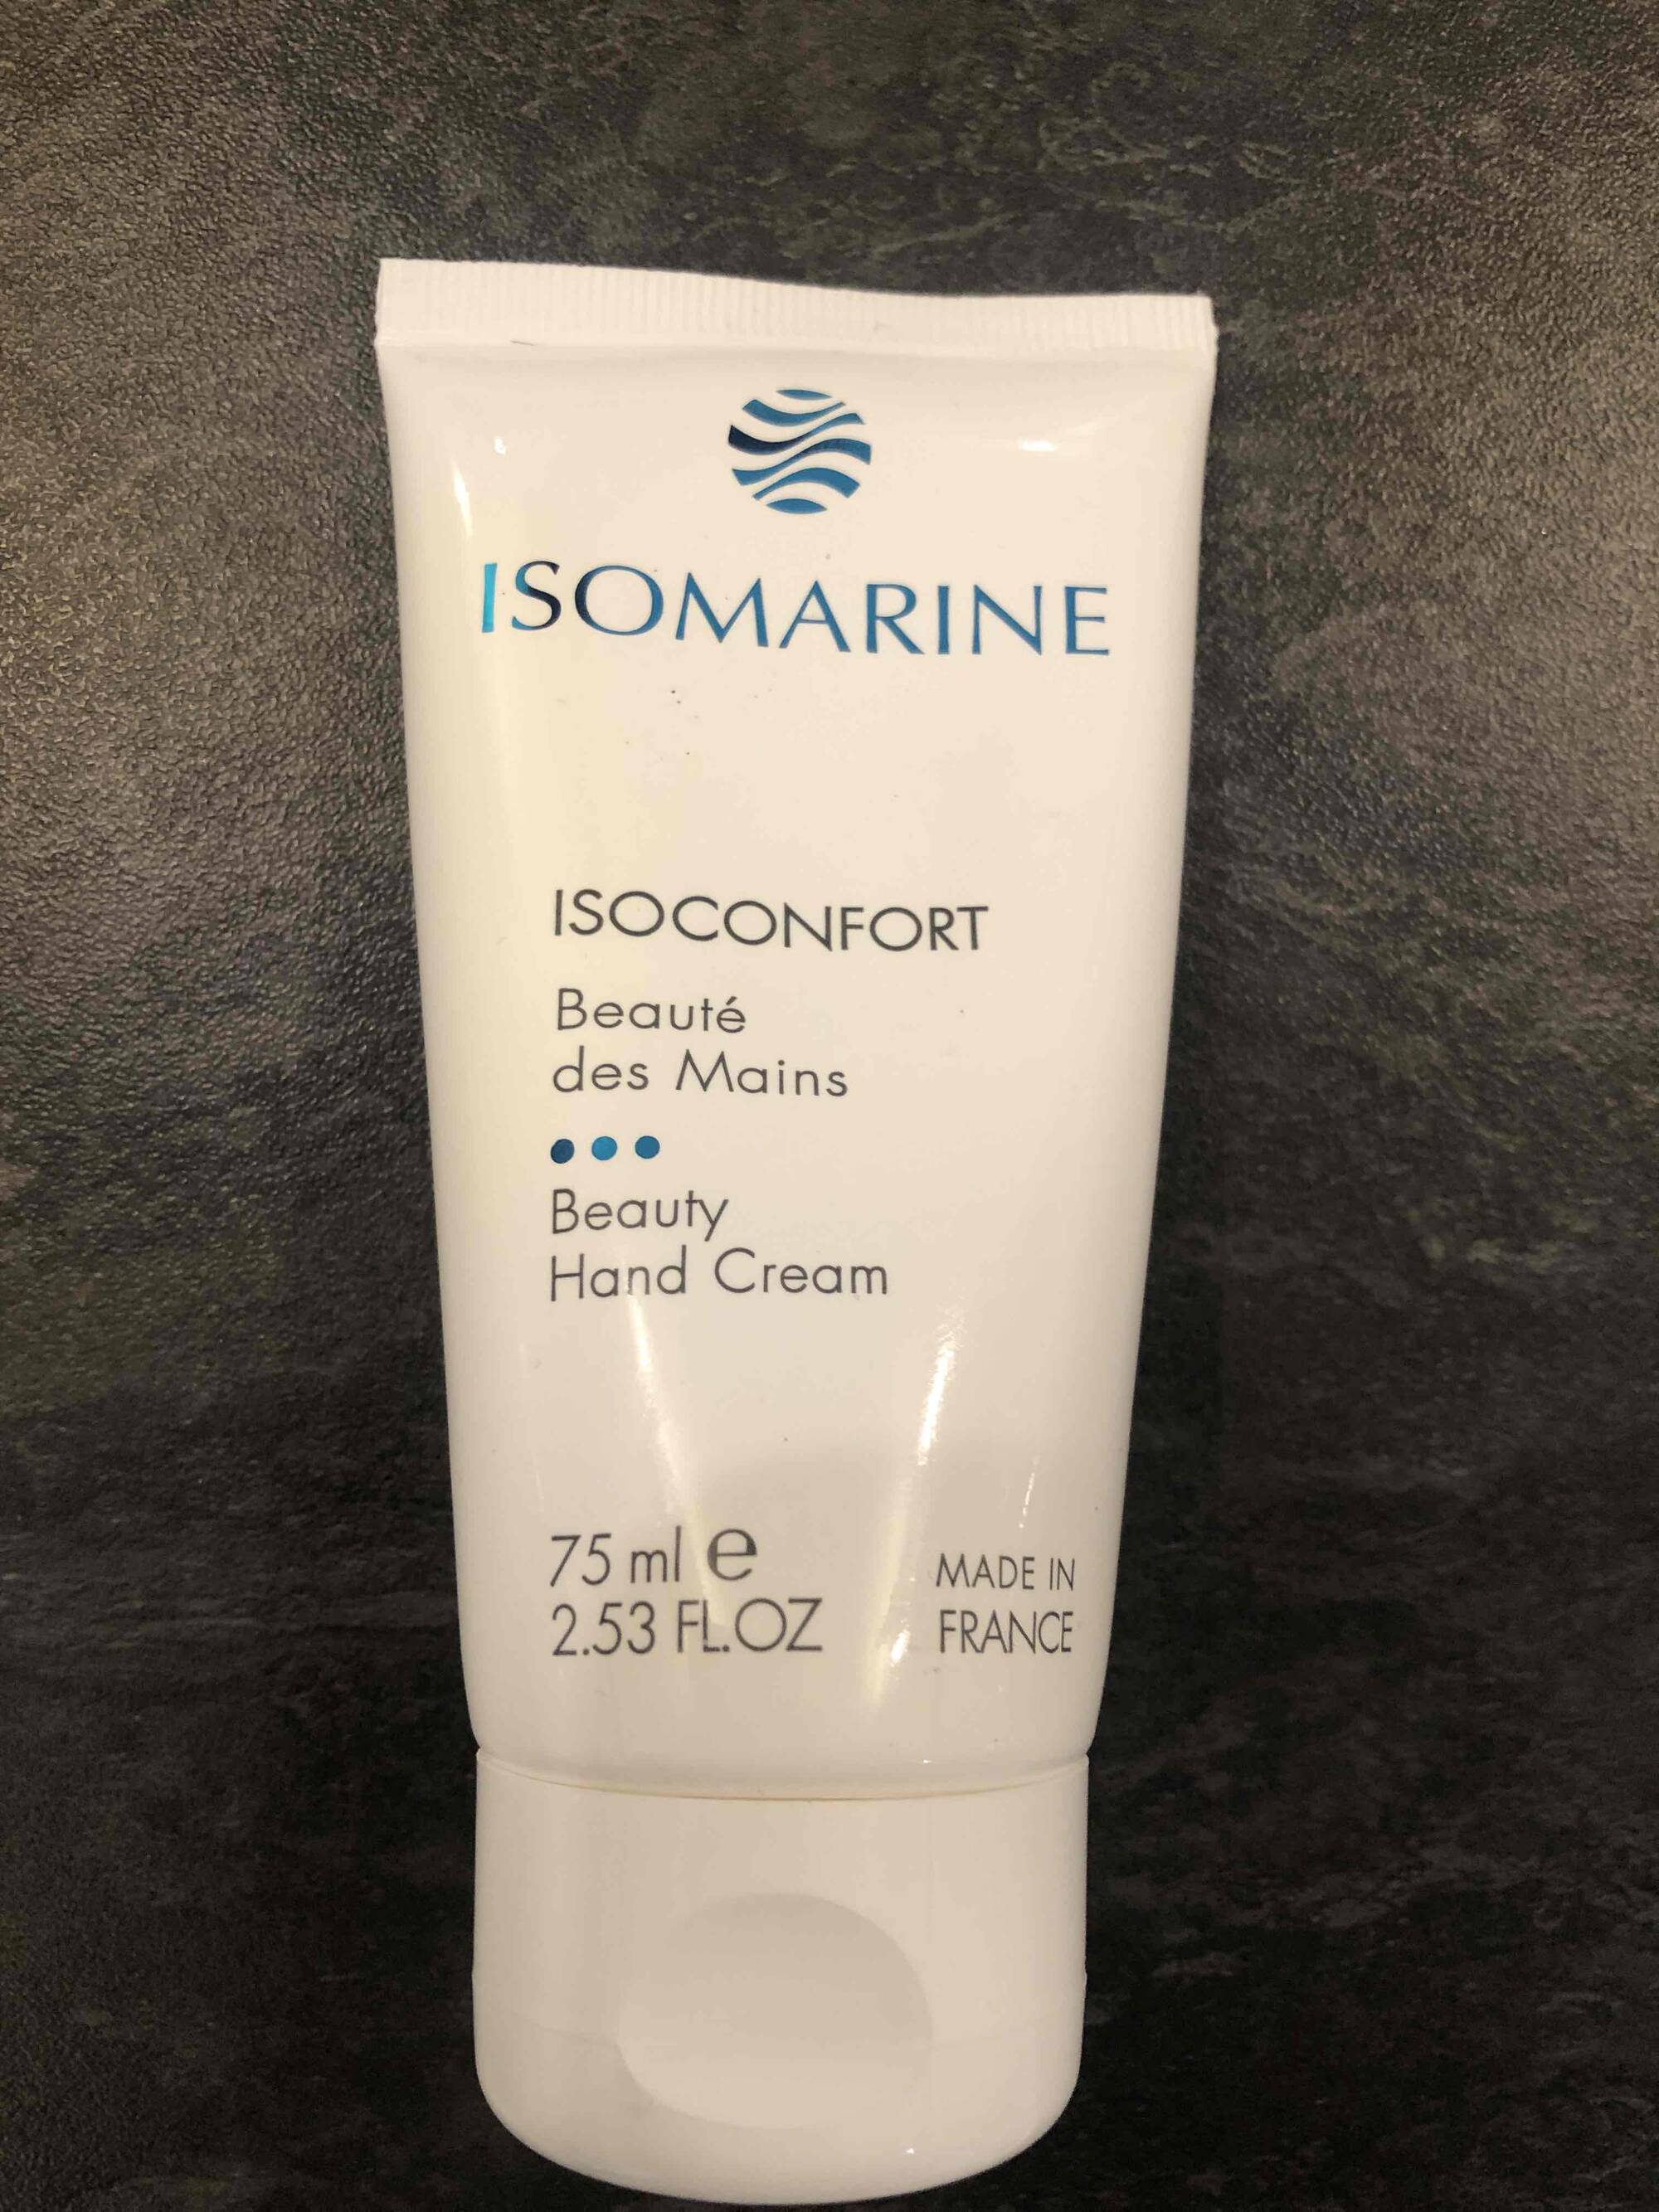 ISOMARINE - Isoconfort - Beauté des mains